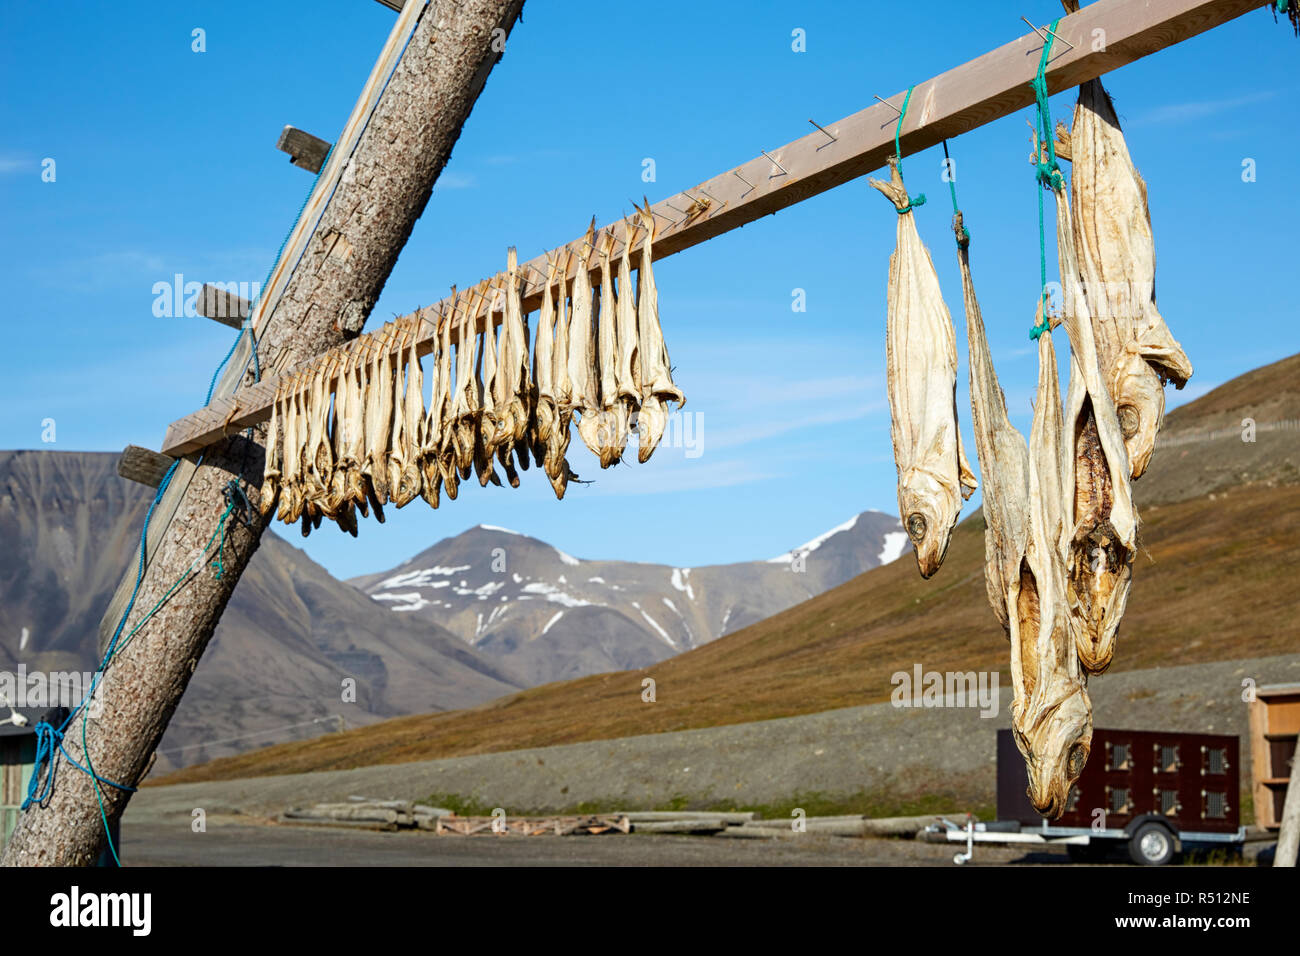 Le séchage du poisson, Longyearbyen, Monte Carlo, Banque D'Images